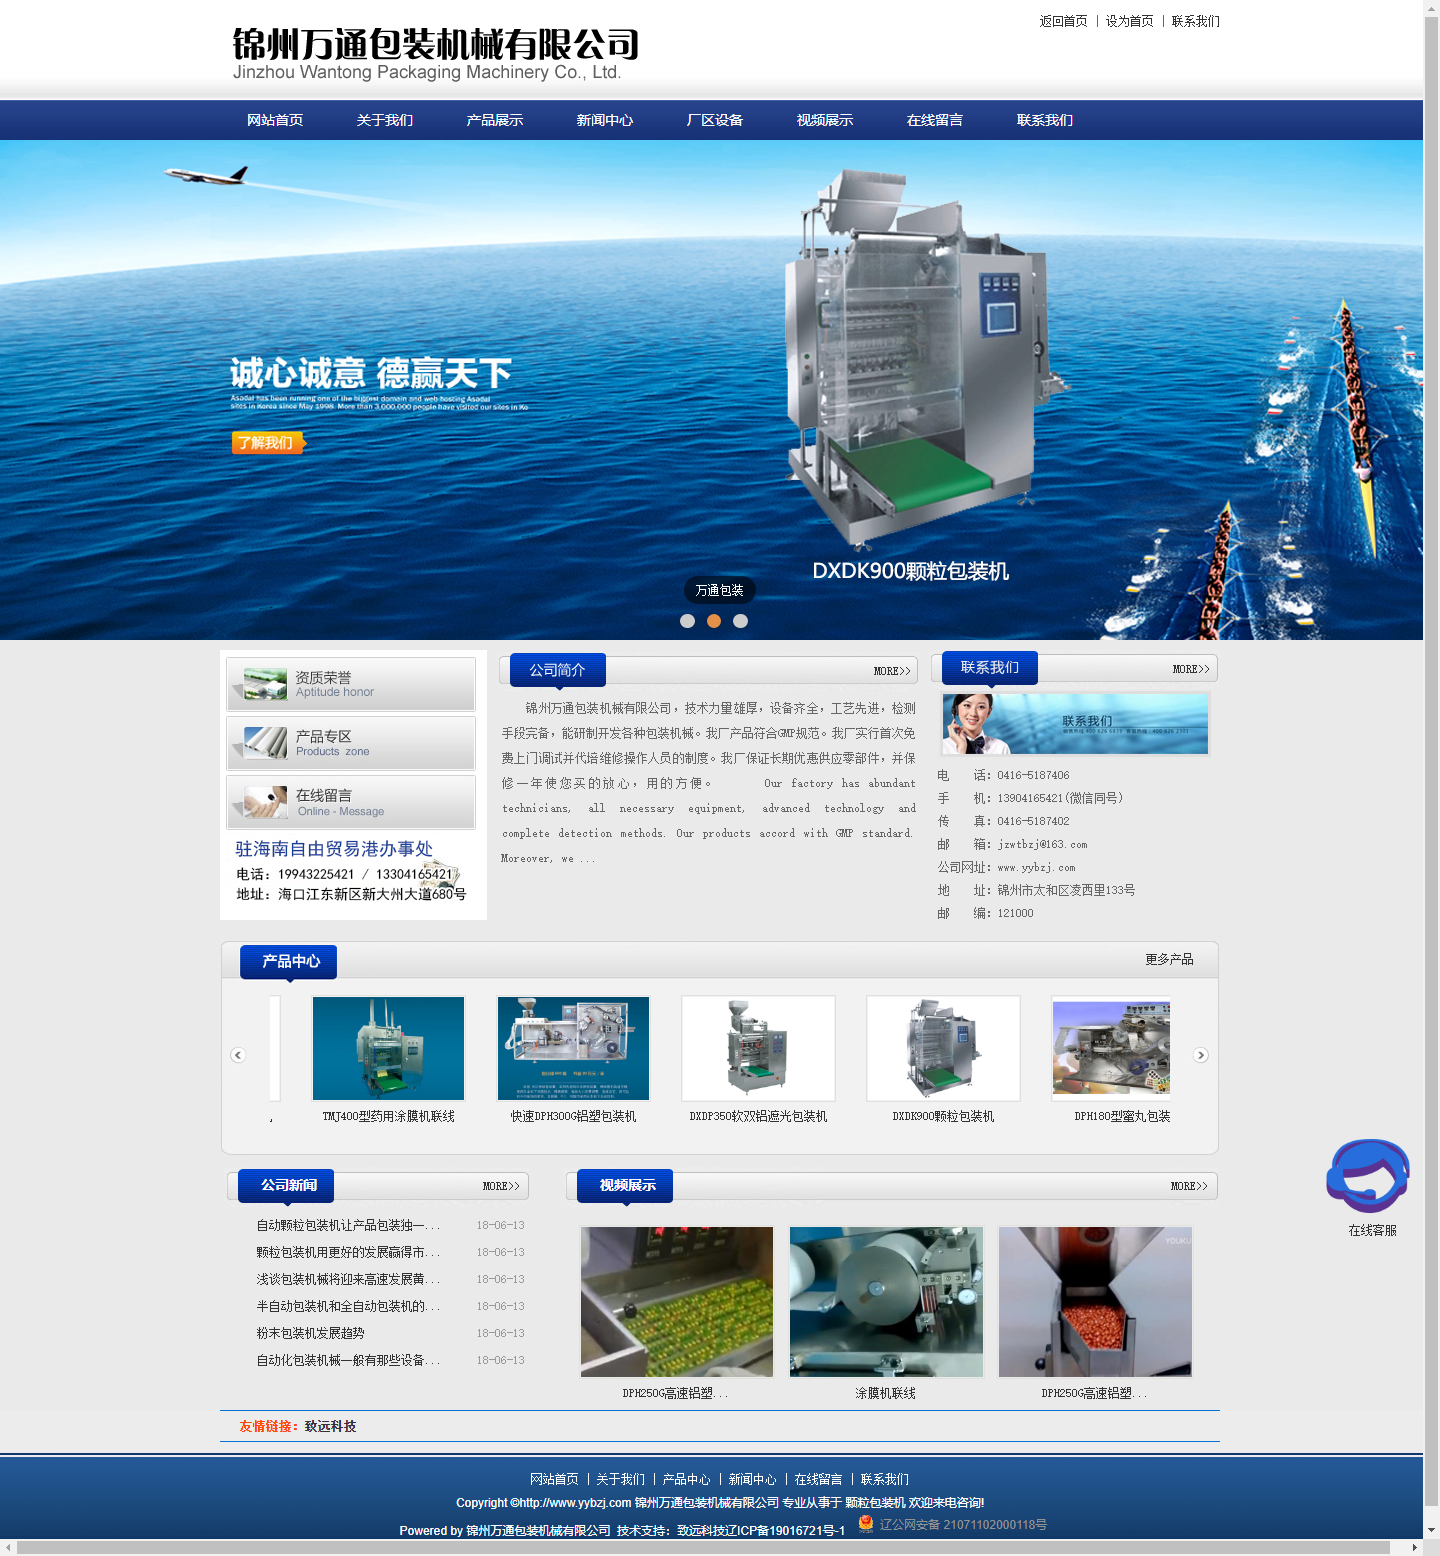 锦州万通包装机械有限公司网站案例